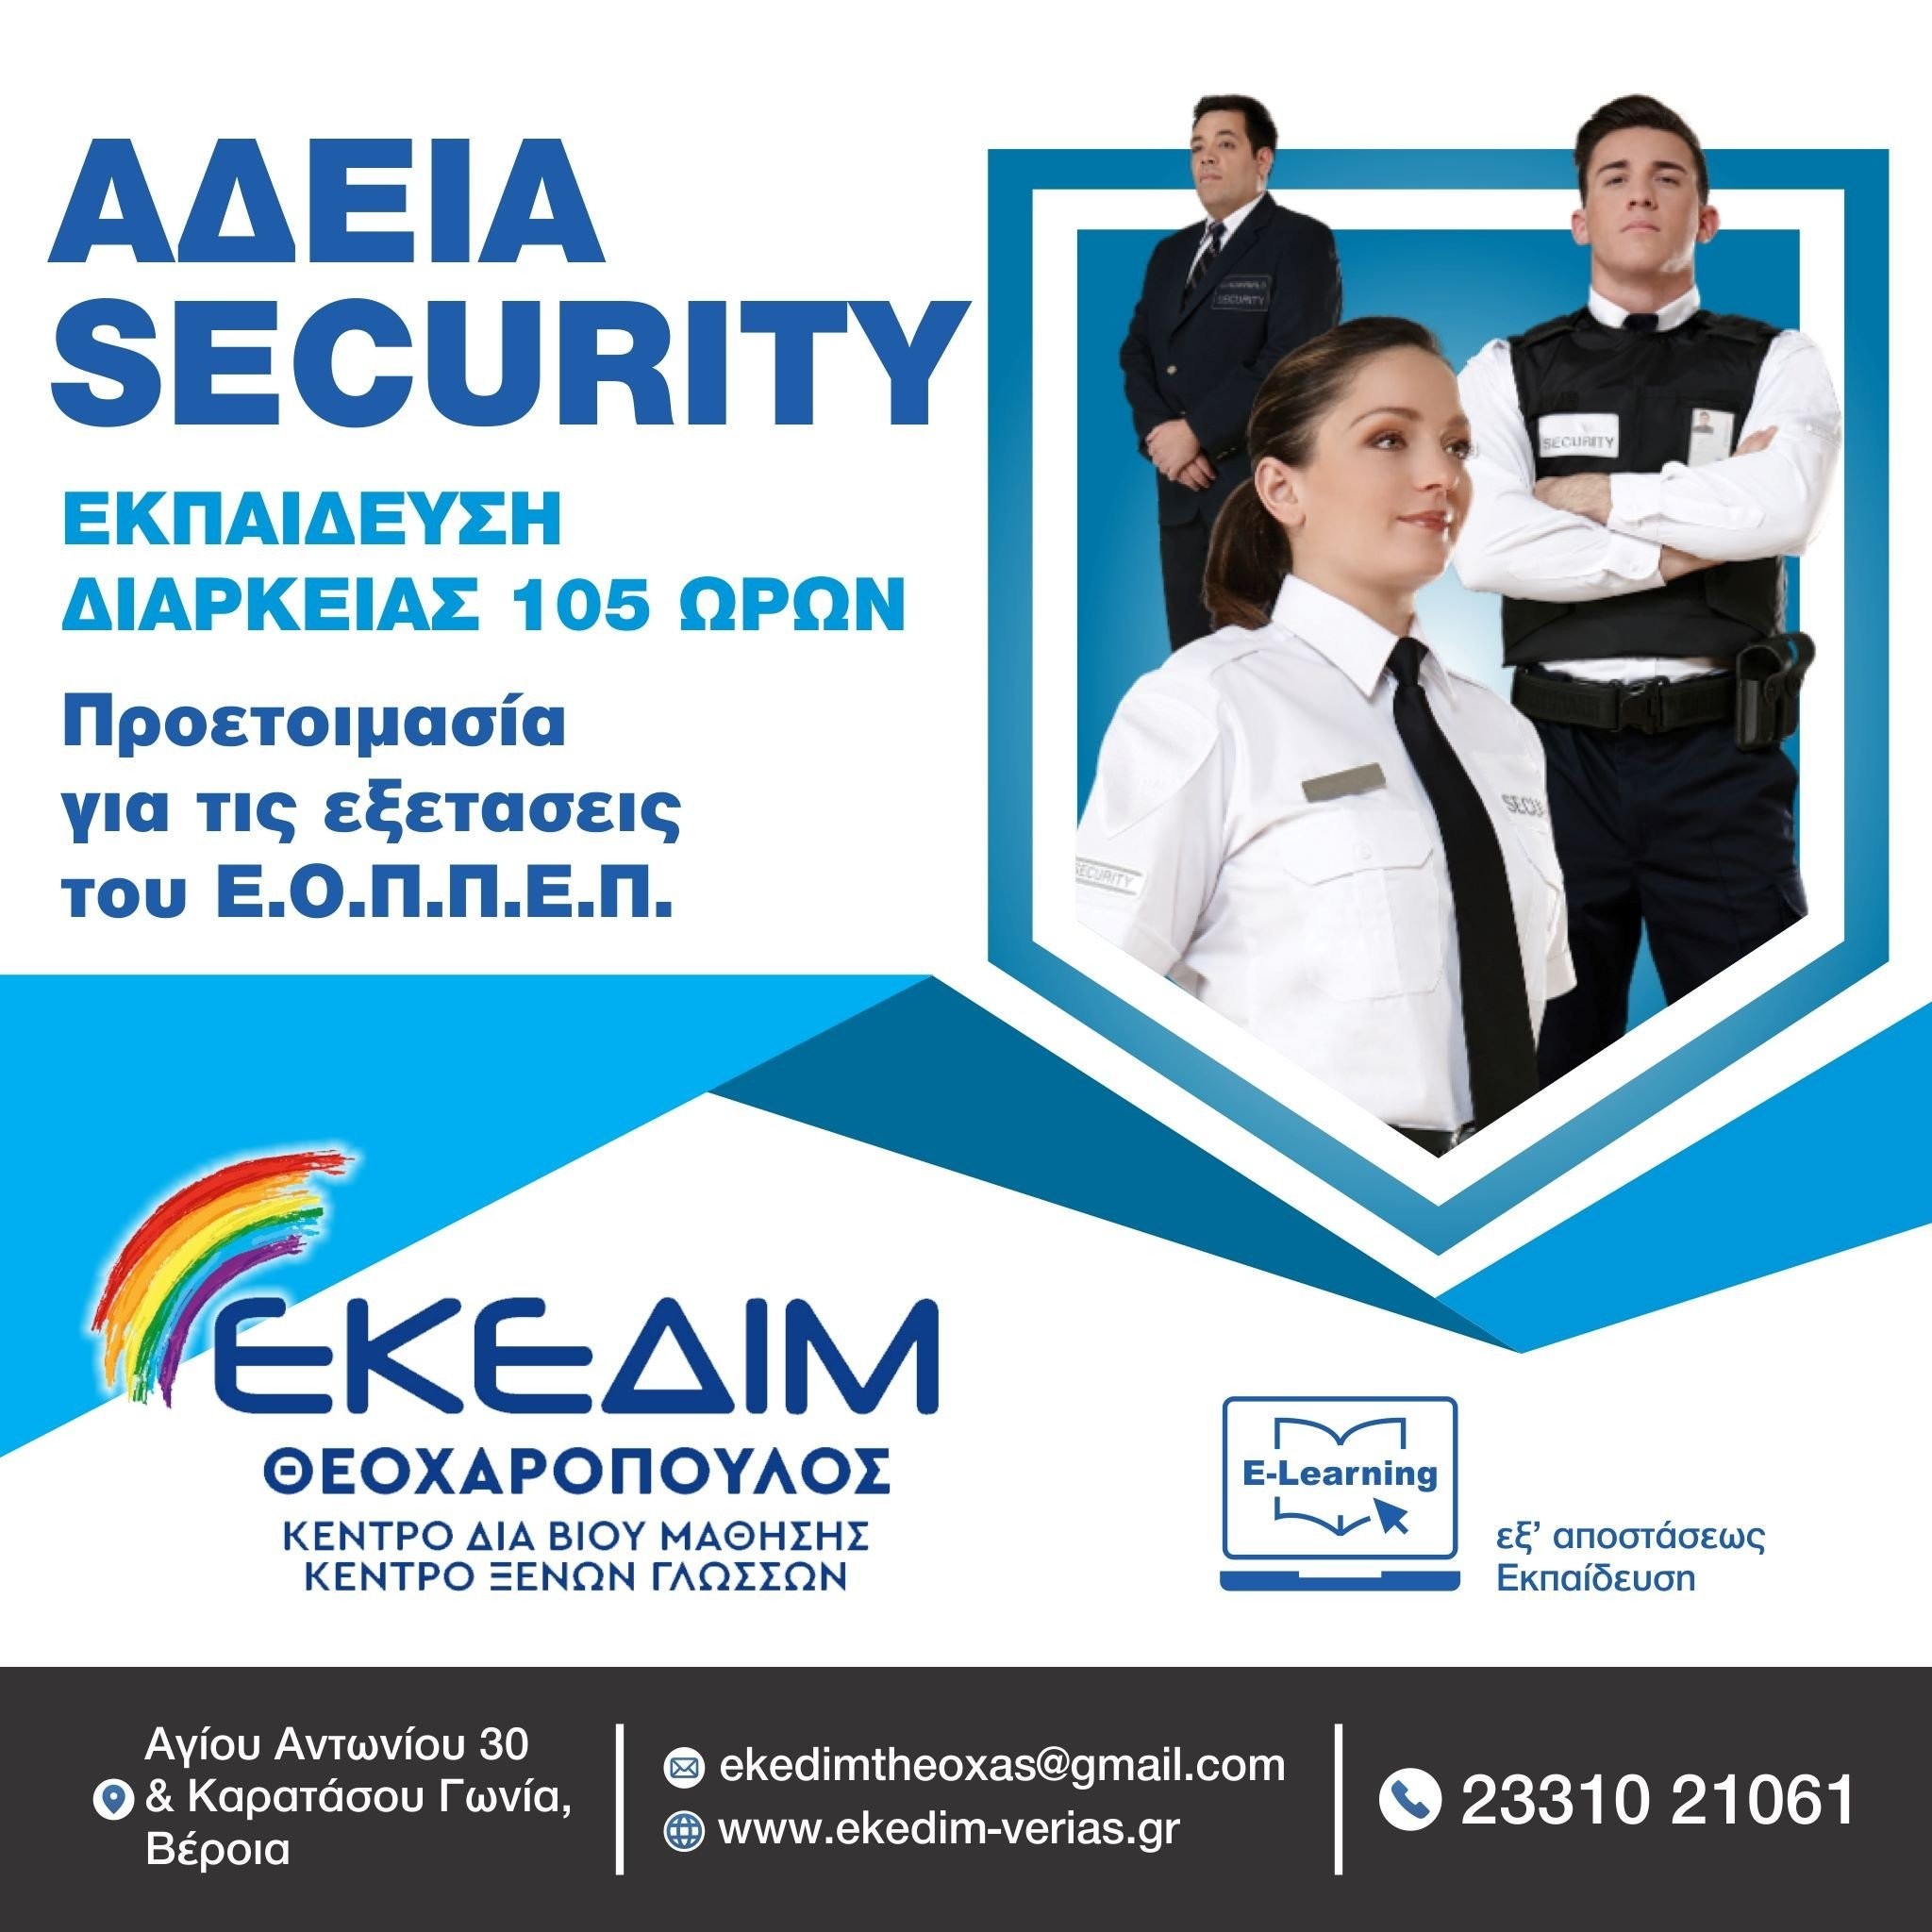 ΕΚΕΔΙΜ Θεοχαρόπουλος- Νέο τμήμα εκπαίδευσης Security, με στόχο τις ερχόμενες εξετάσεις Πιστοποίησης